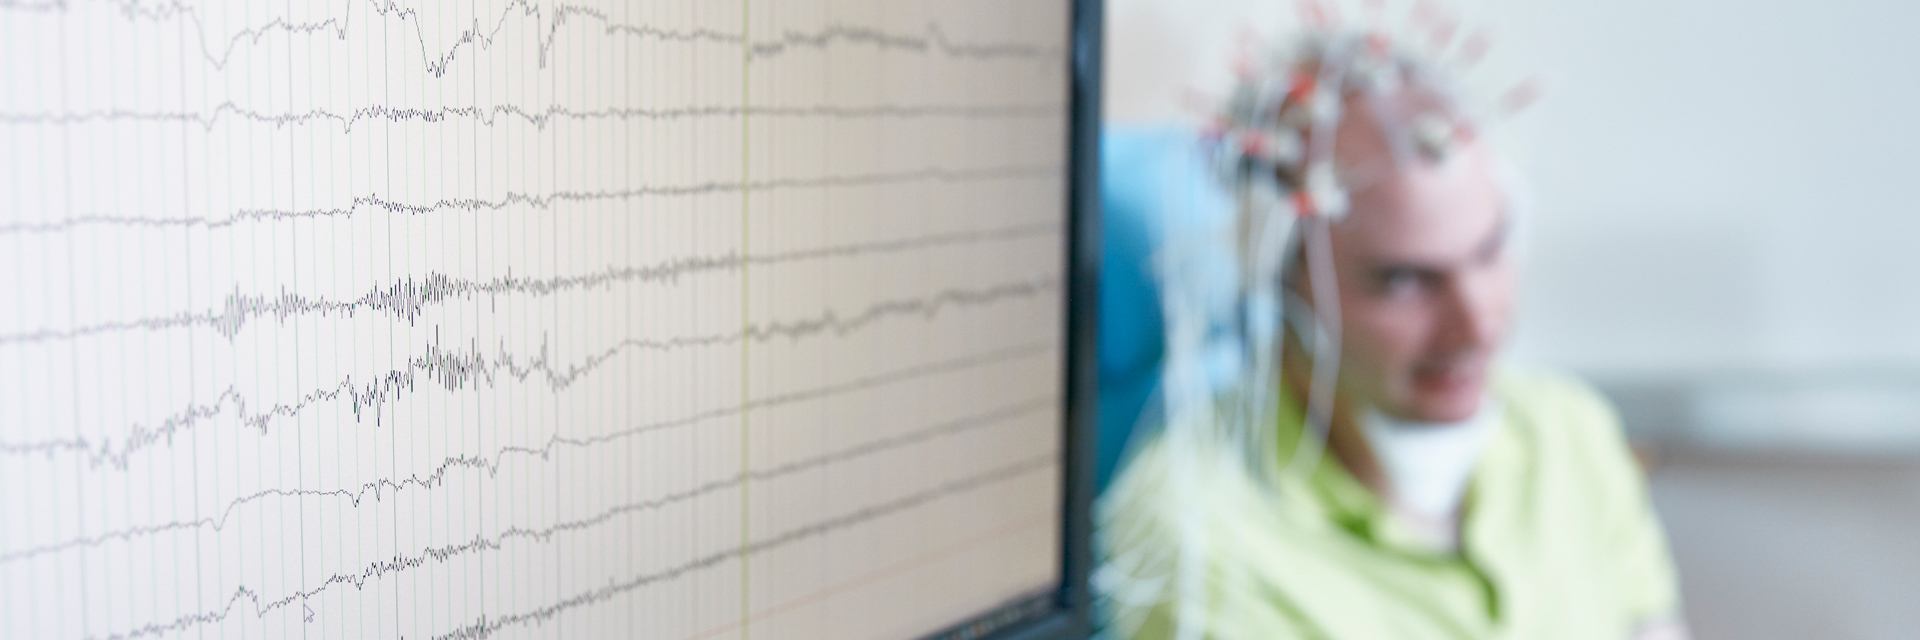 Bild: Bei einem Patienten wird ein Elektroenzephalogramm (EEG) zur Überprüfung der medikamentösen Epilepsieeinstellung erstellt